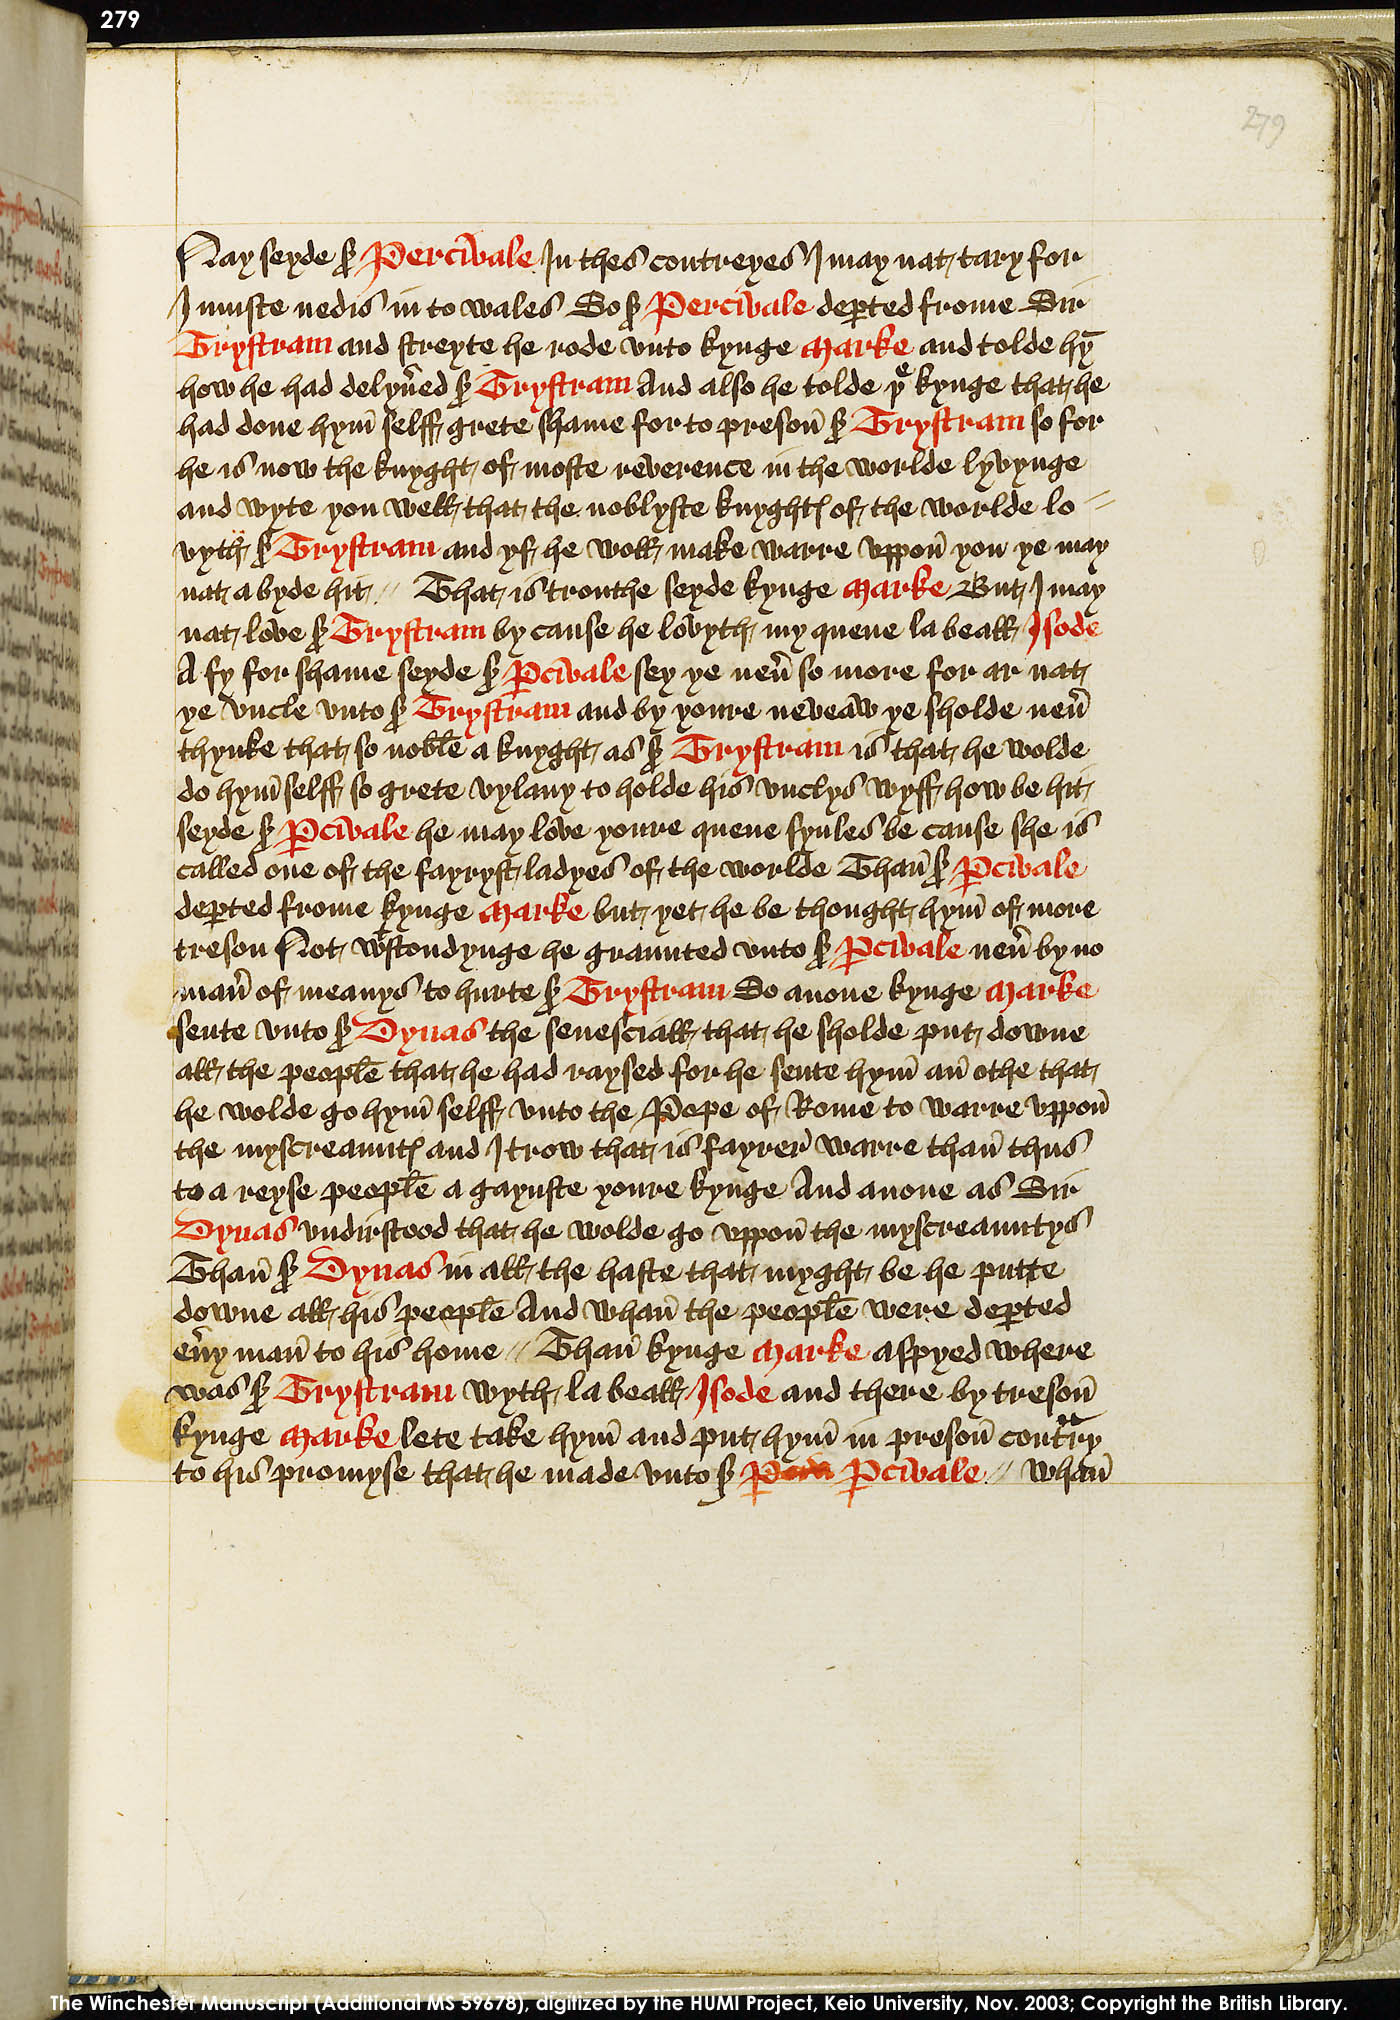 Folio 279r